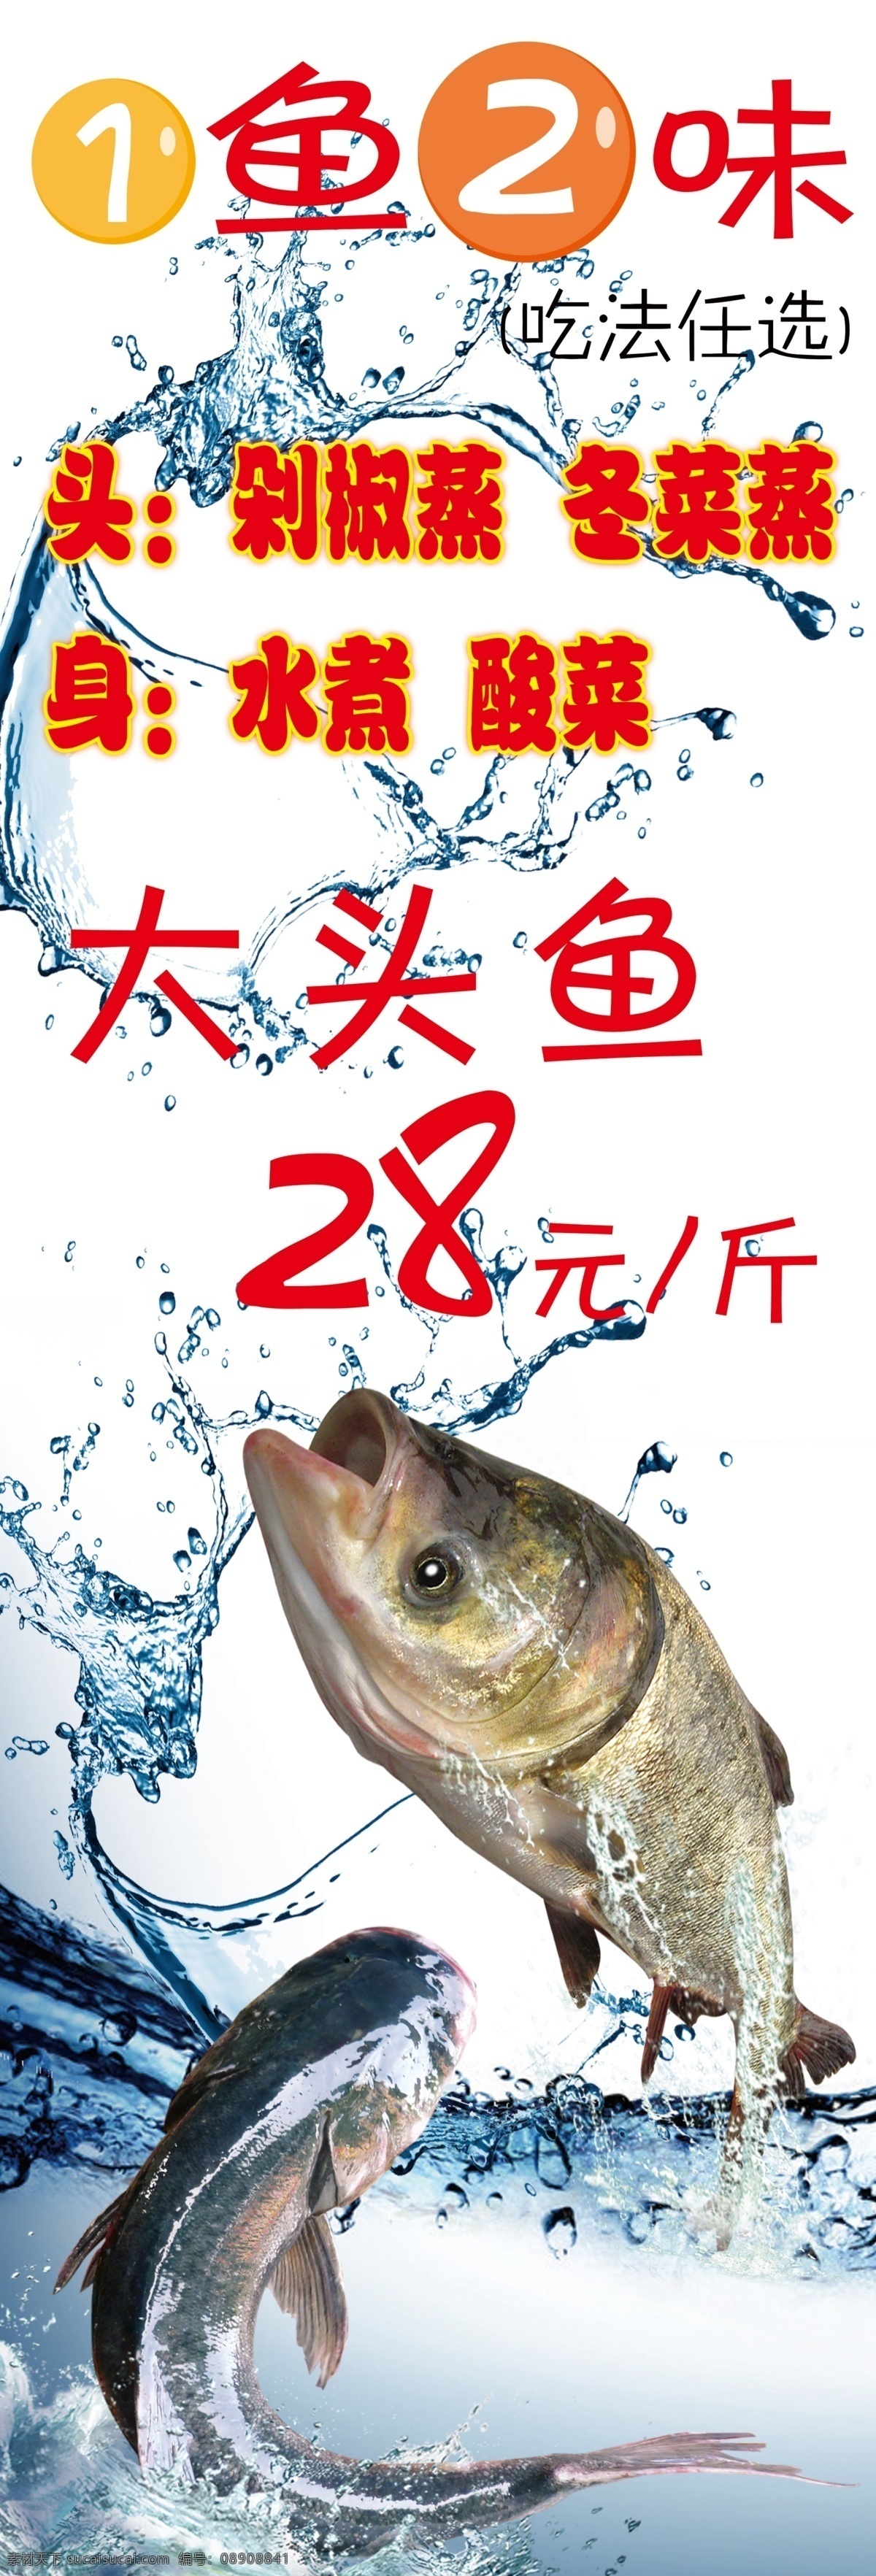 鱼 二 味 大头鱼 广告 一鱼二味 一鱼二吃 剁椒鱼头 冬菜蒸鱼头 水煮鱼 酸菜鱼